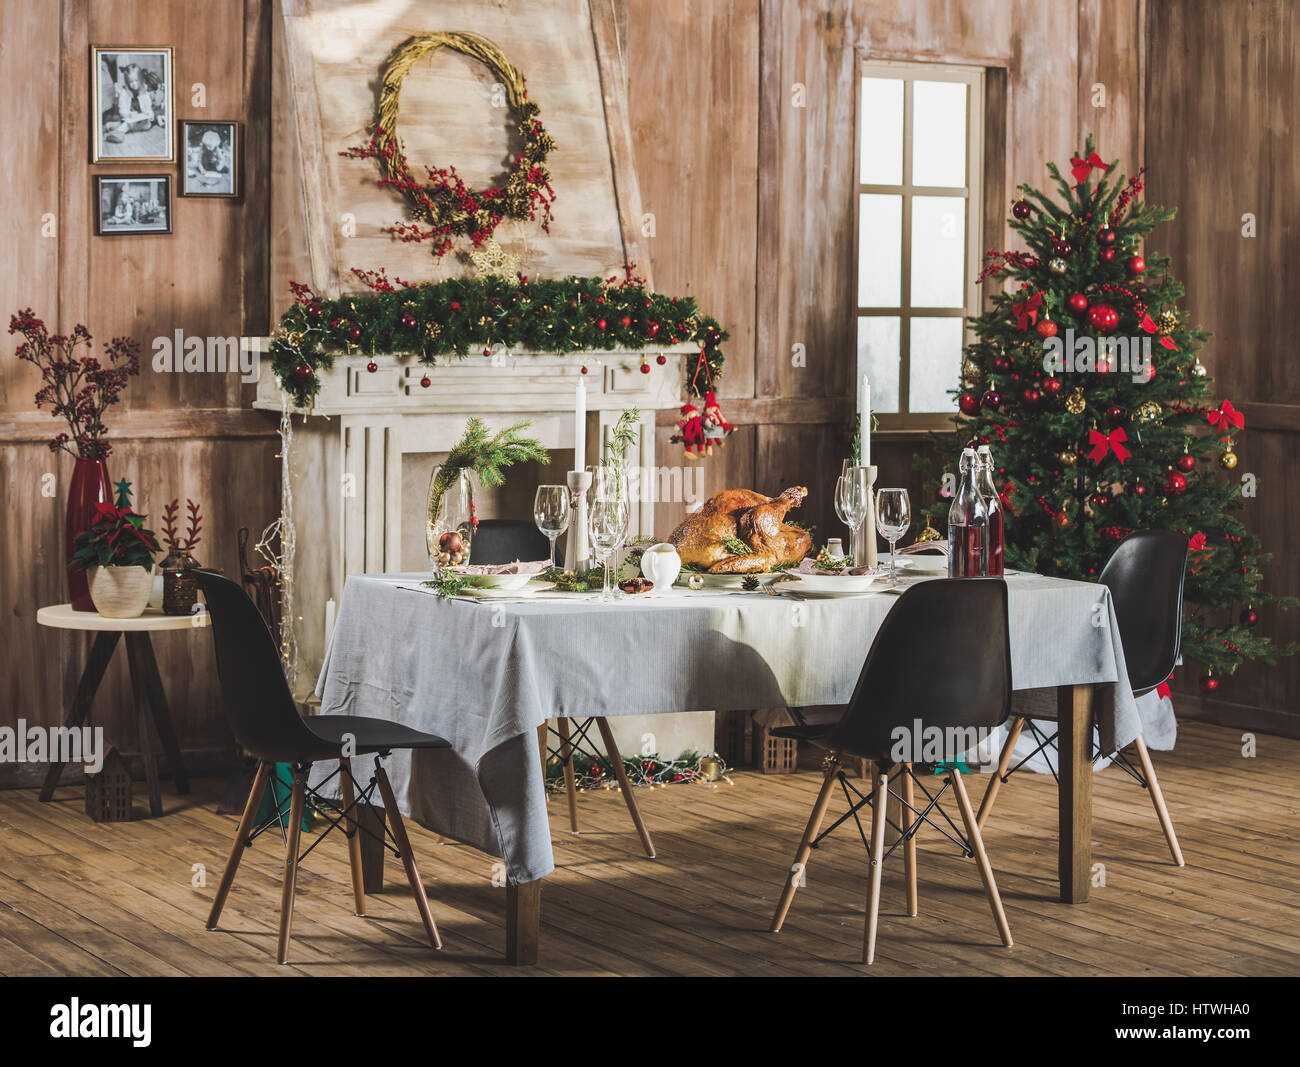 Délicieux rôti de dinde servi sur table de vacances décorée pour Noël Banque D'Images